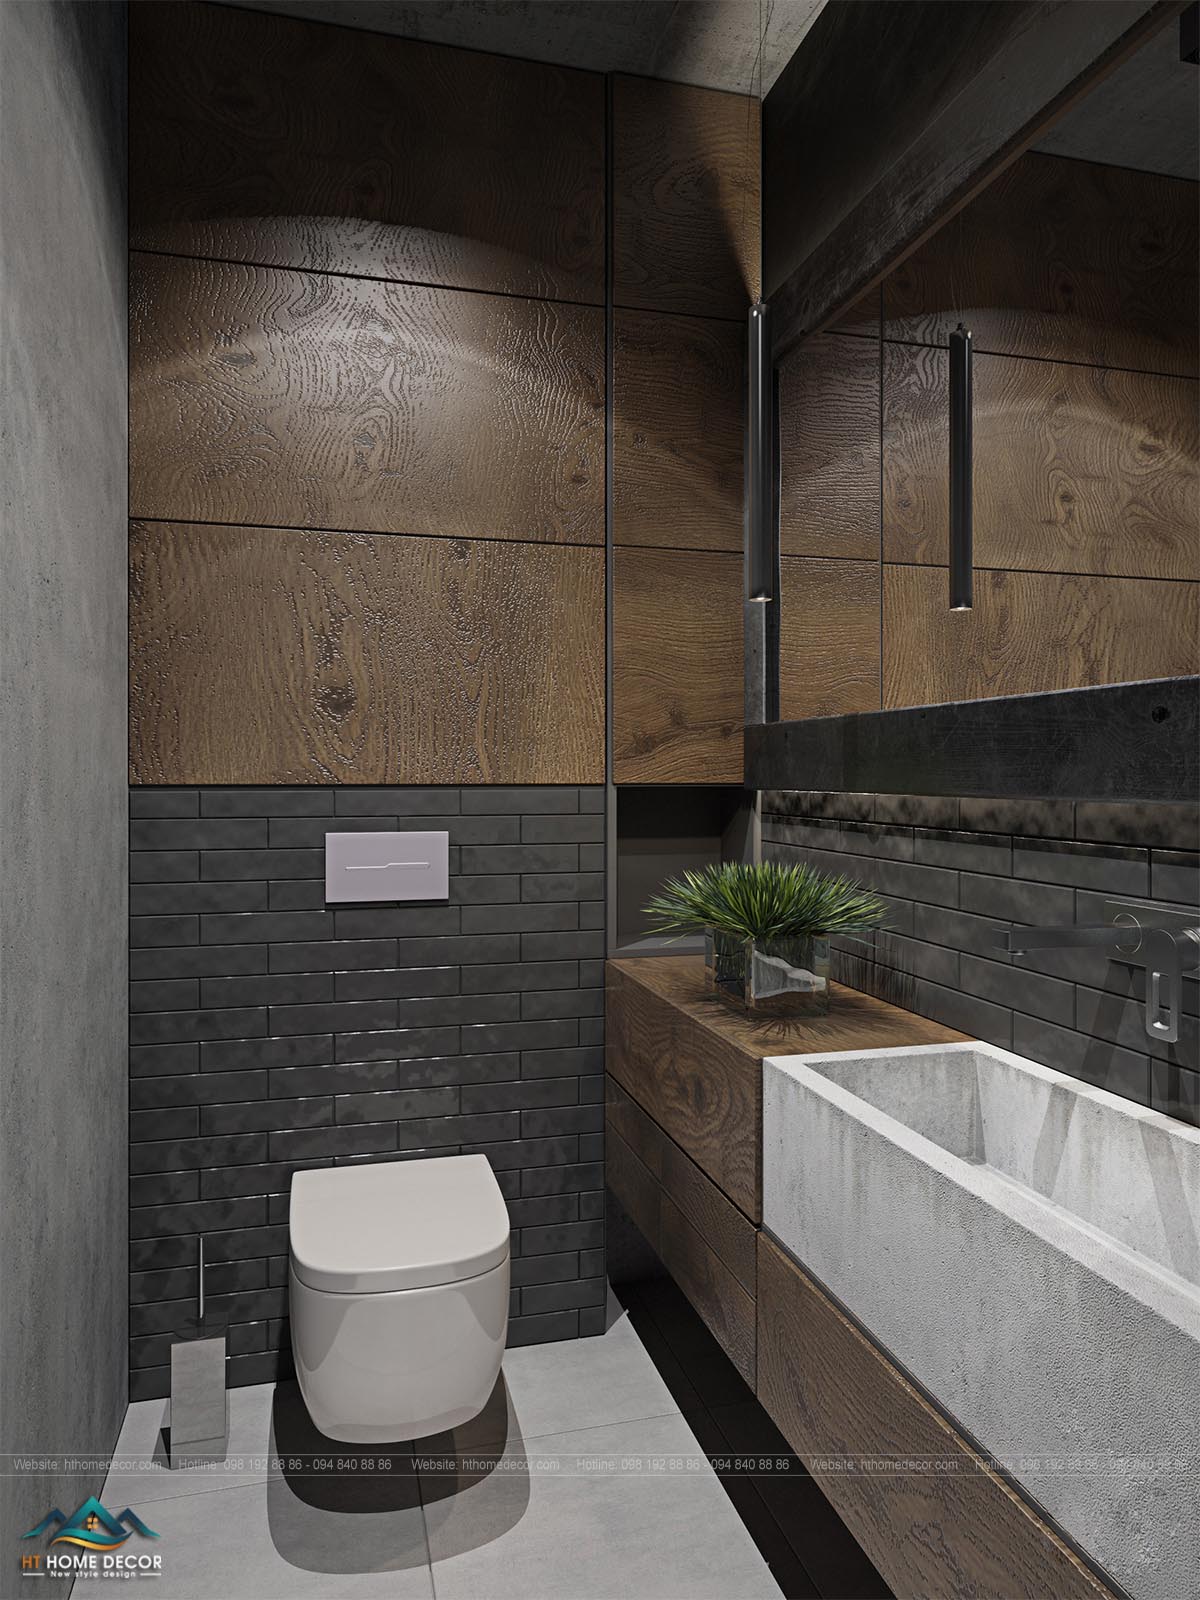 Tường nhà vệ sinh ốp gỗ và giả gạch. Đem lại cảm giác sạch sẽ khi sử dụng. Toilet dạng treo với hộc đựng nước được tiết giảm là lựa chọn hiện đại trong các căn chung cư luxury.